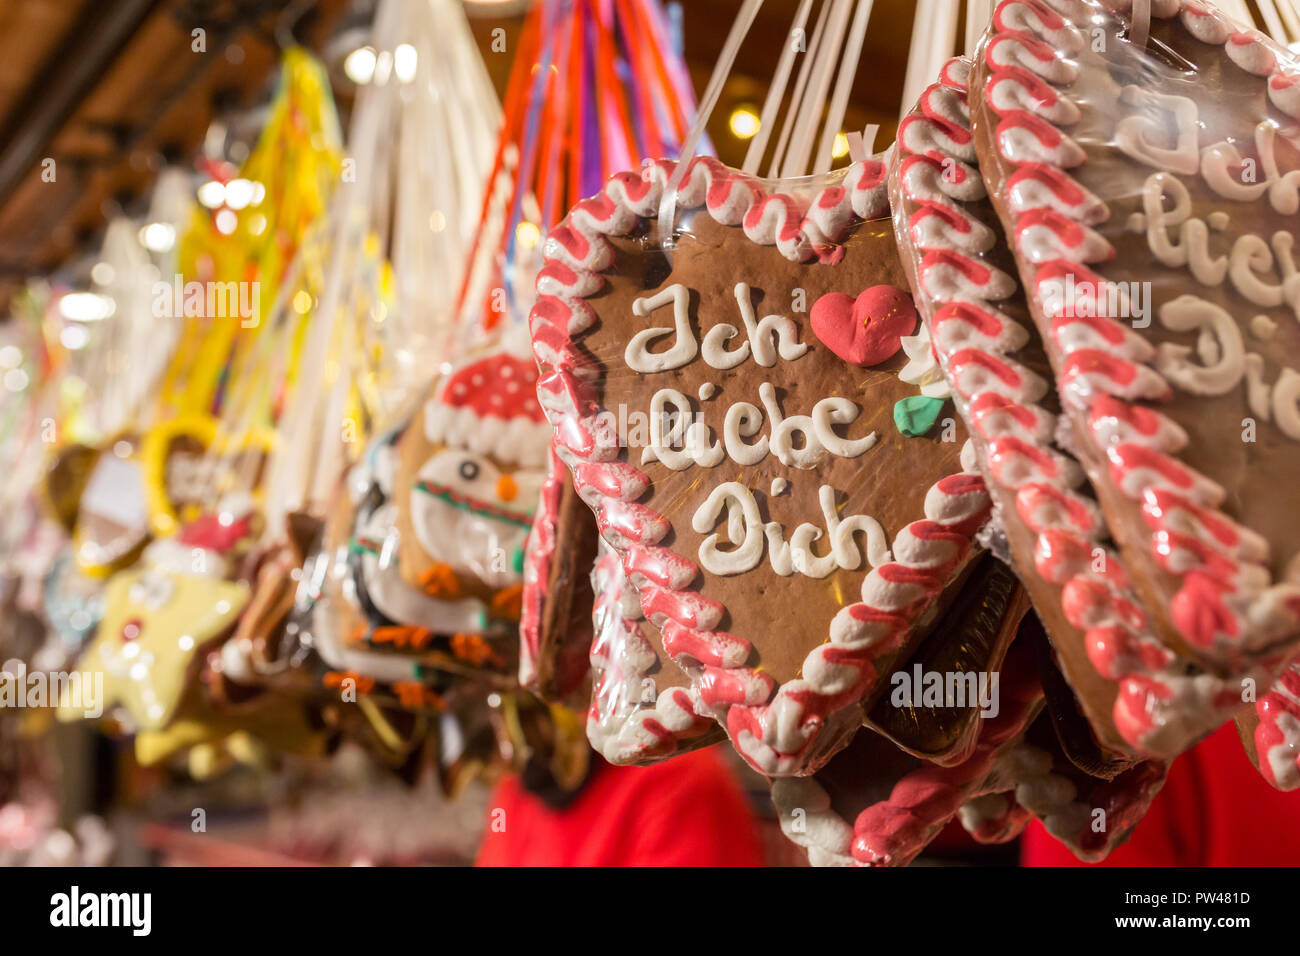 Coeurs d'épices au Marché de Noël allemand. Sur le pain d'épice traditionnel cookies écrit "I love you" en allemand. Banque D'Images